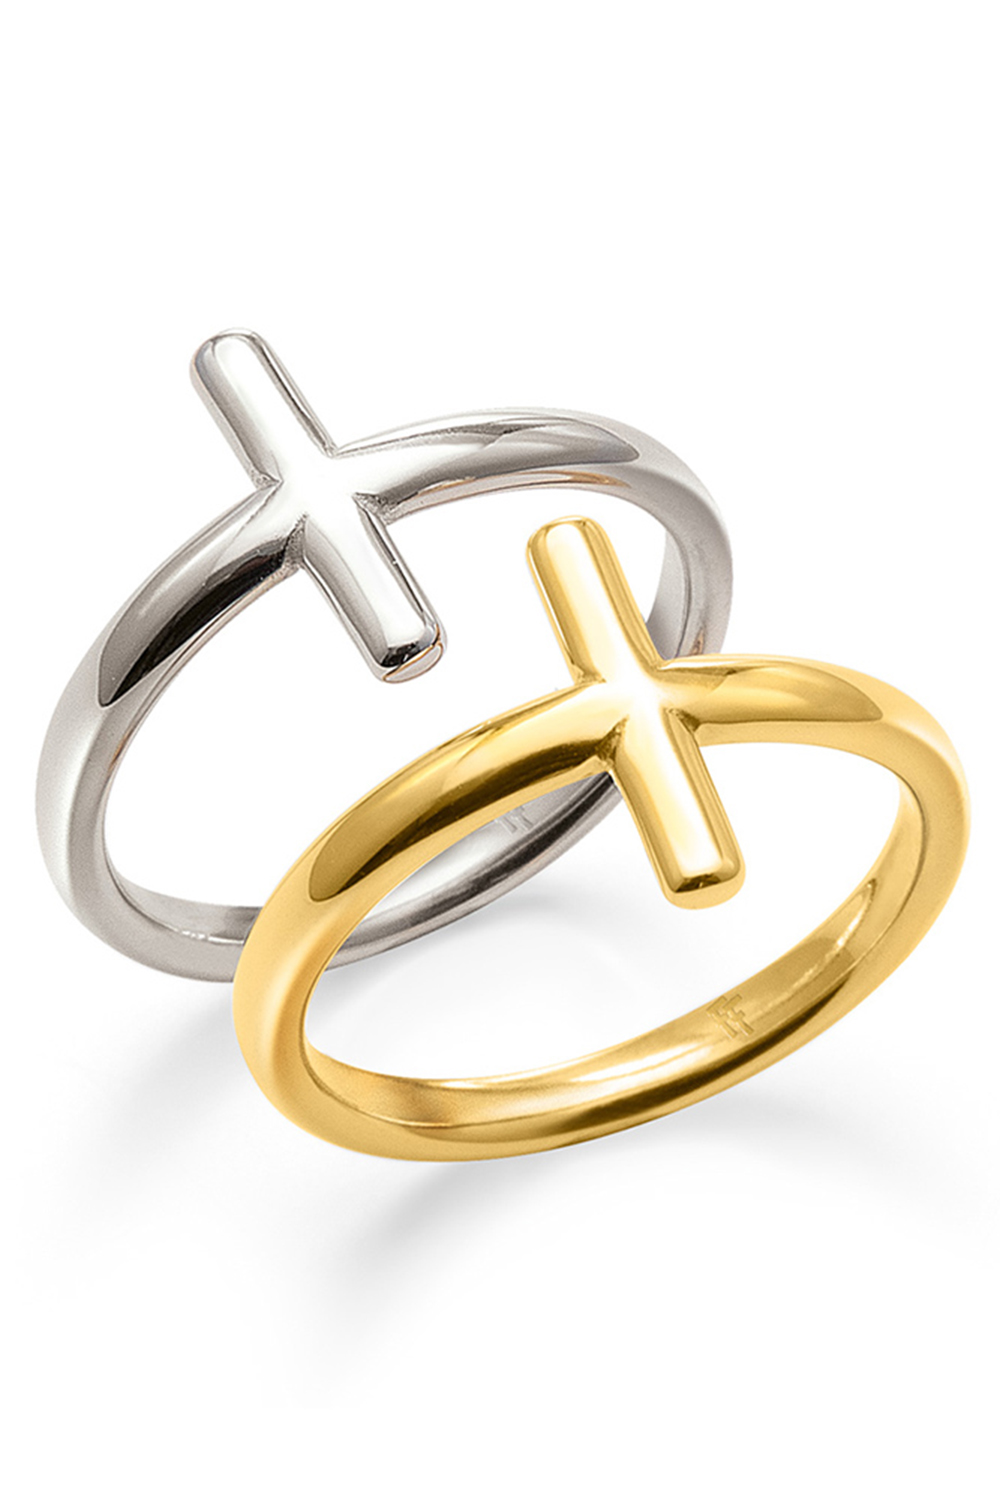 FOLLI FOLLIE – Γυναικείο σετ δύο δαχτυλίδια από ορείχαλκο FOLLI FOLLIE CARMA χρυσό ασημί 1R19D028Y